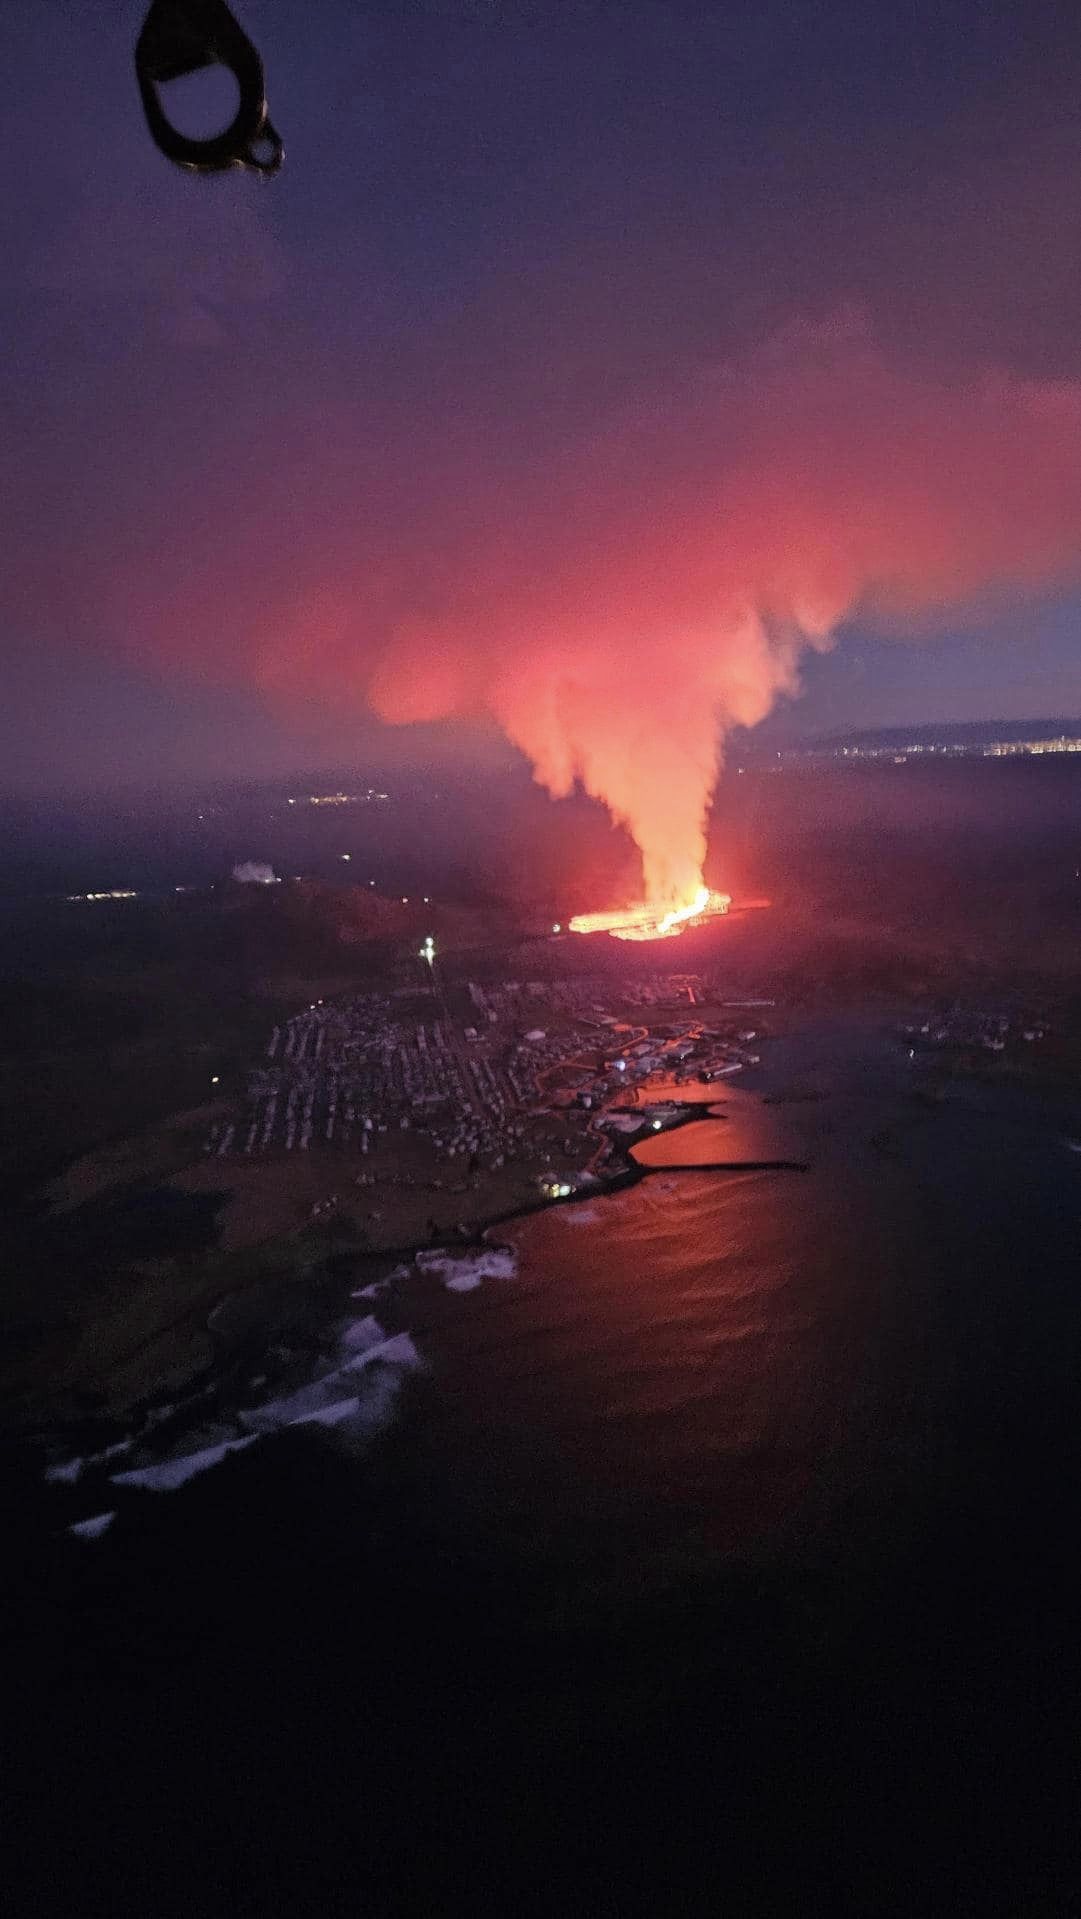 vulkaanuitbarsting 14 jan Grindavík 2